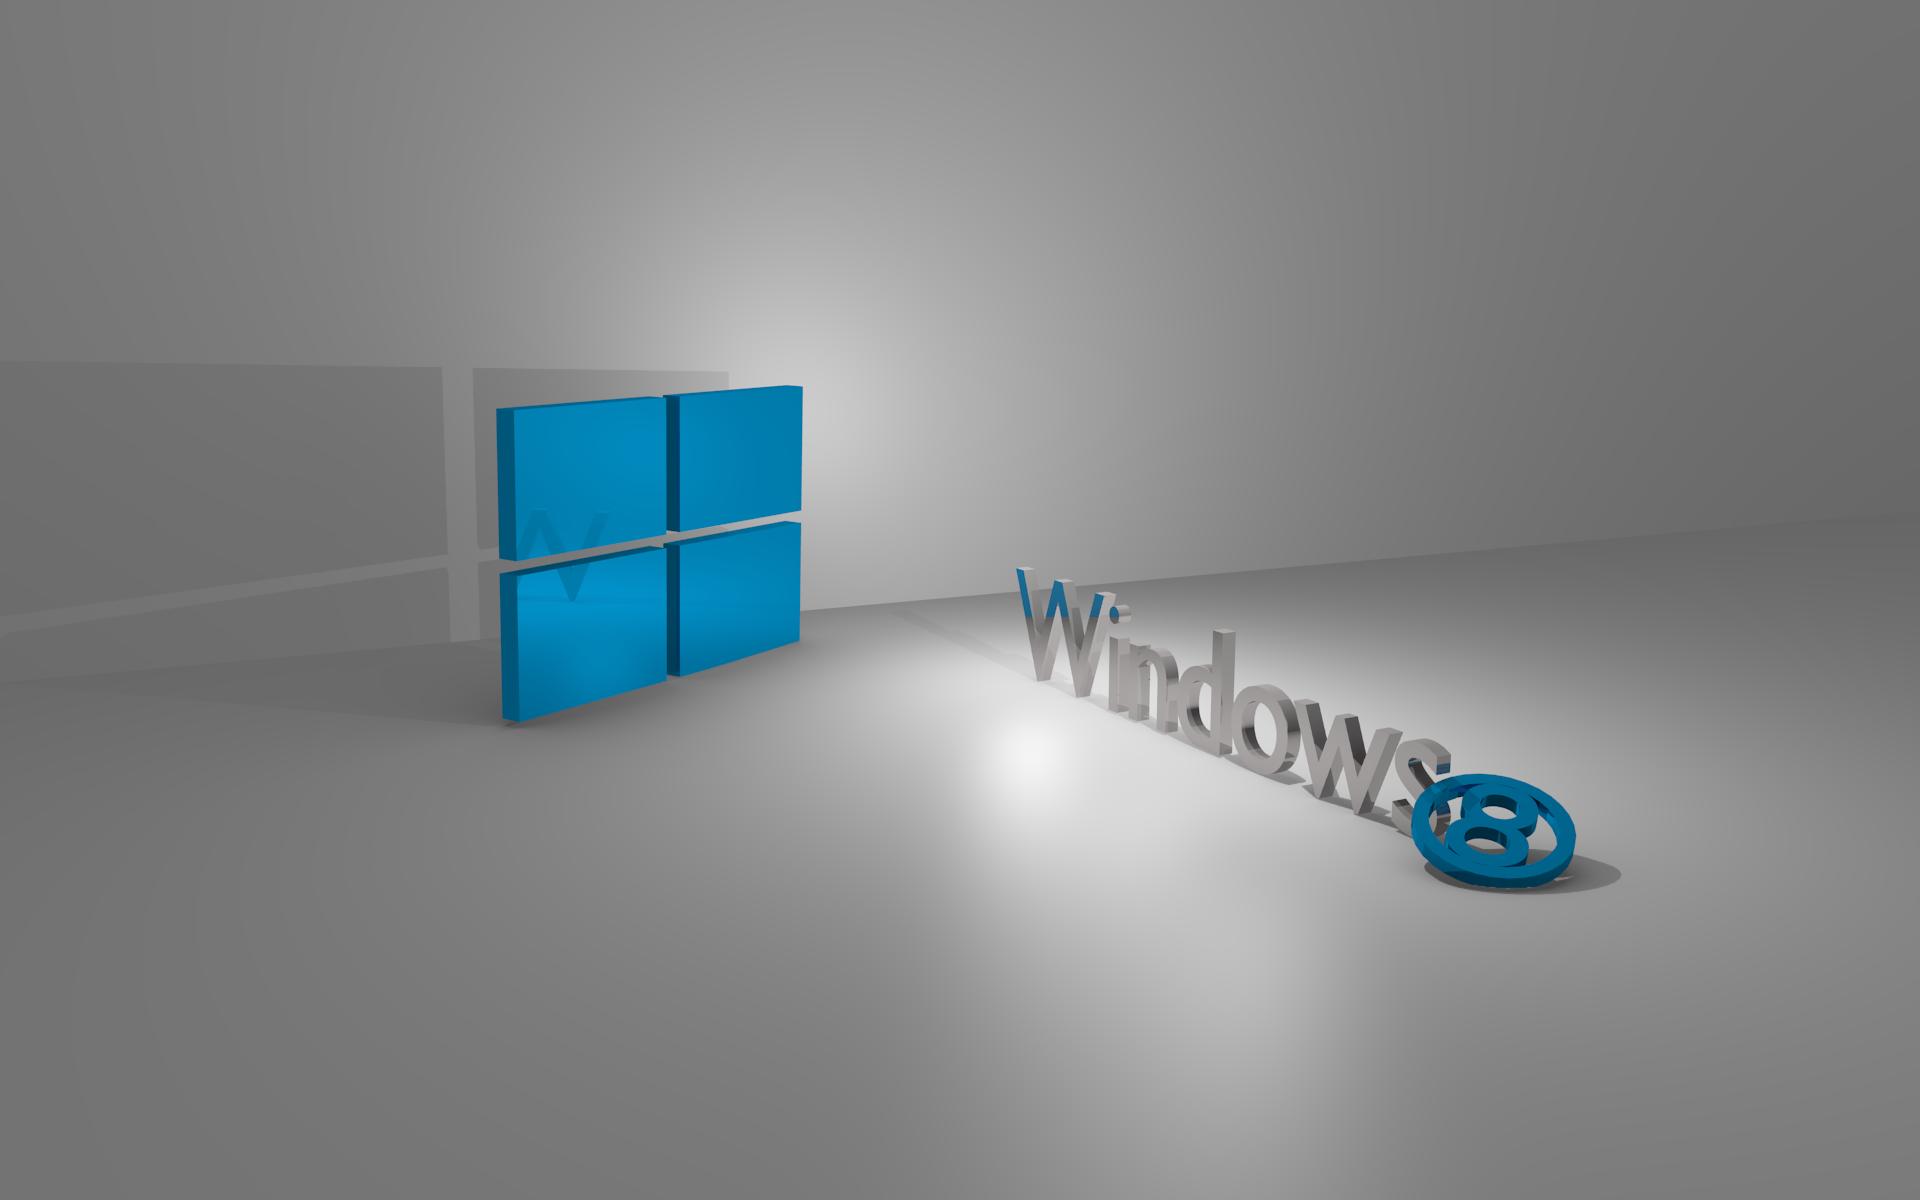 Windows 10 Wallpaper 3d - Windows 8 Wallpaper 3d - 1920x1200 Wallpaper -  